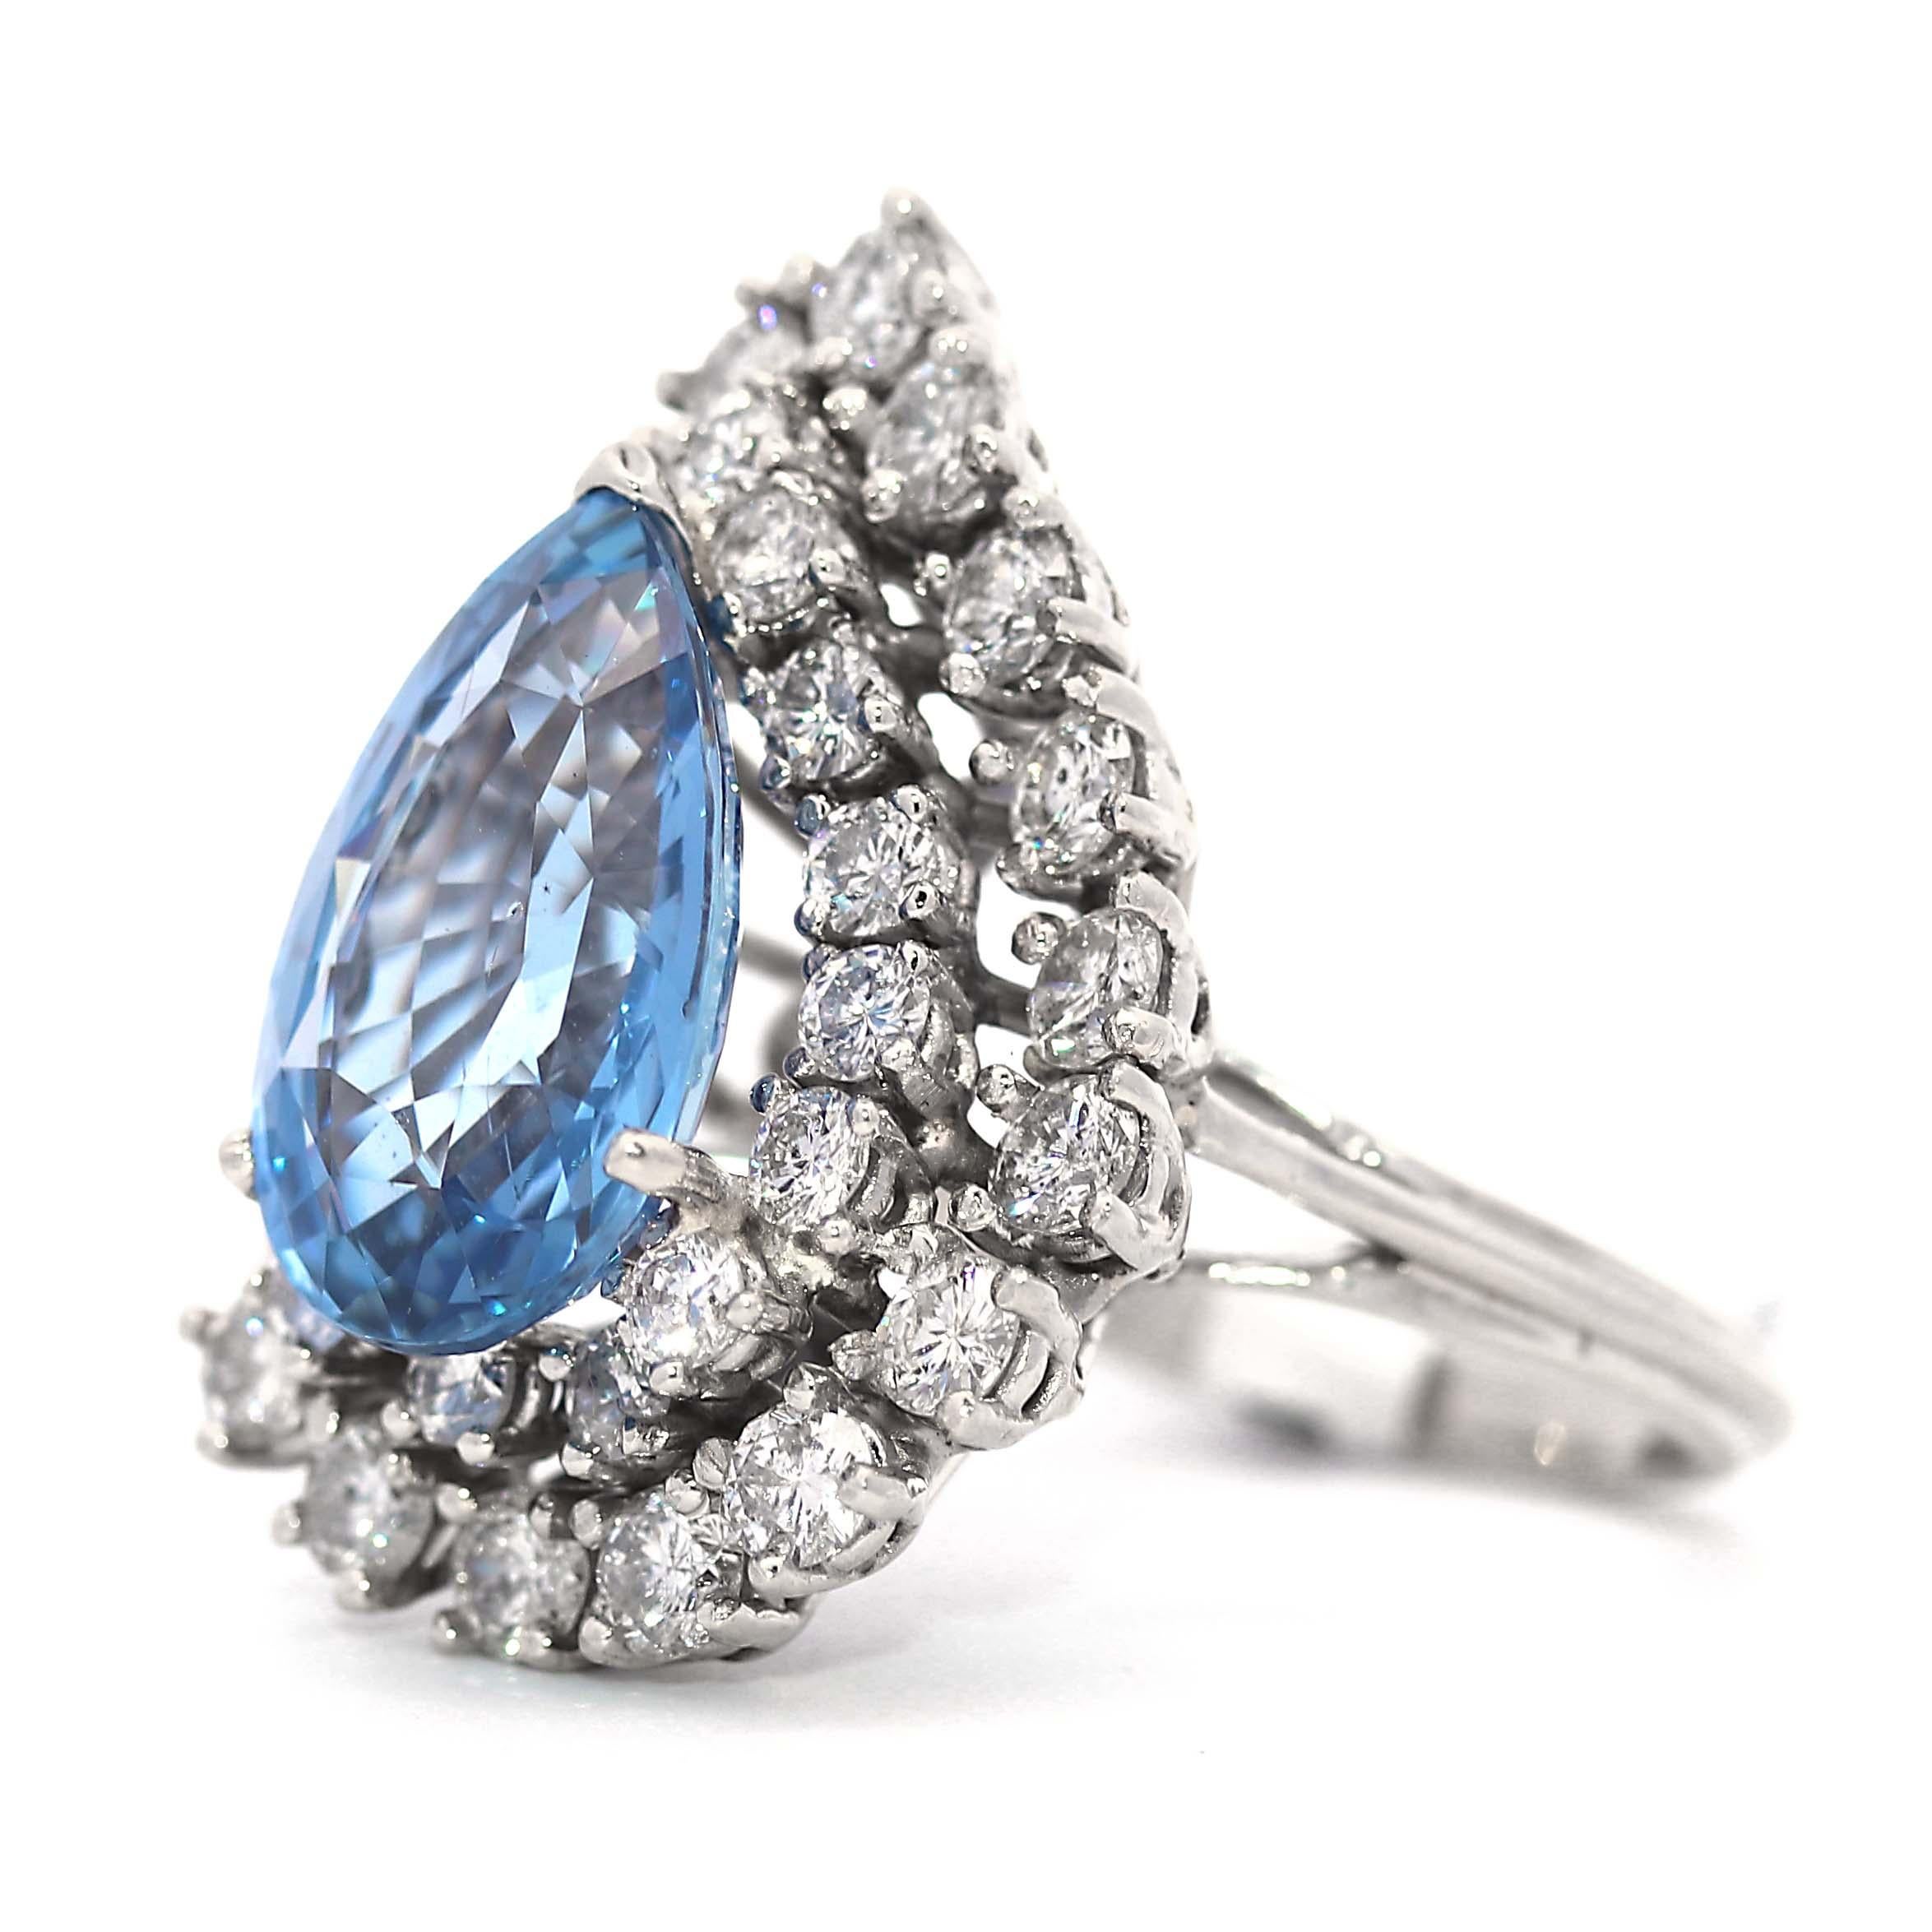 Bague en diamant en forme de poire certifiée GIA, saphir du Sri Lanka/ Ceylan sans chaleur pesant 8,38 carats.  Le saphir de Ceylan central, taillé en poire, rayonne d'une teinte bleue brillante et éclatante. Cette pièce maîtresse captivante, qui